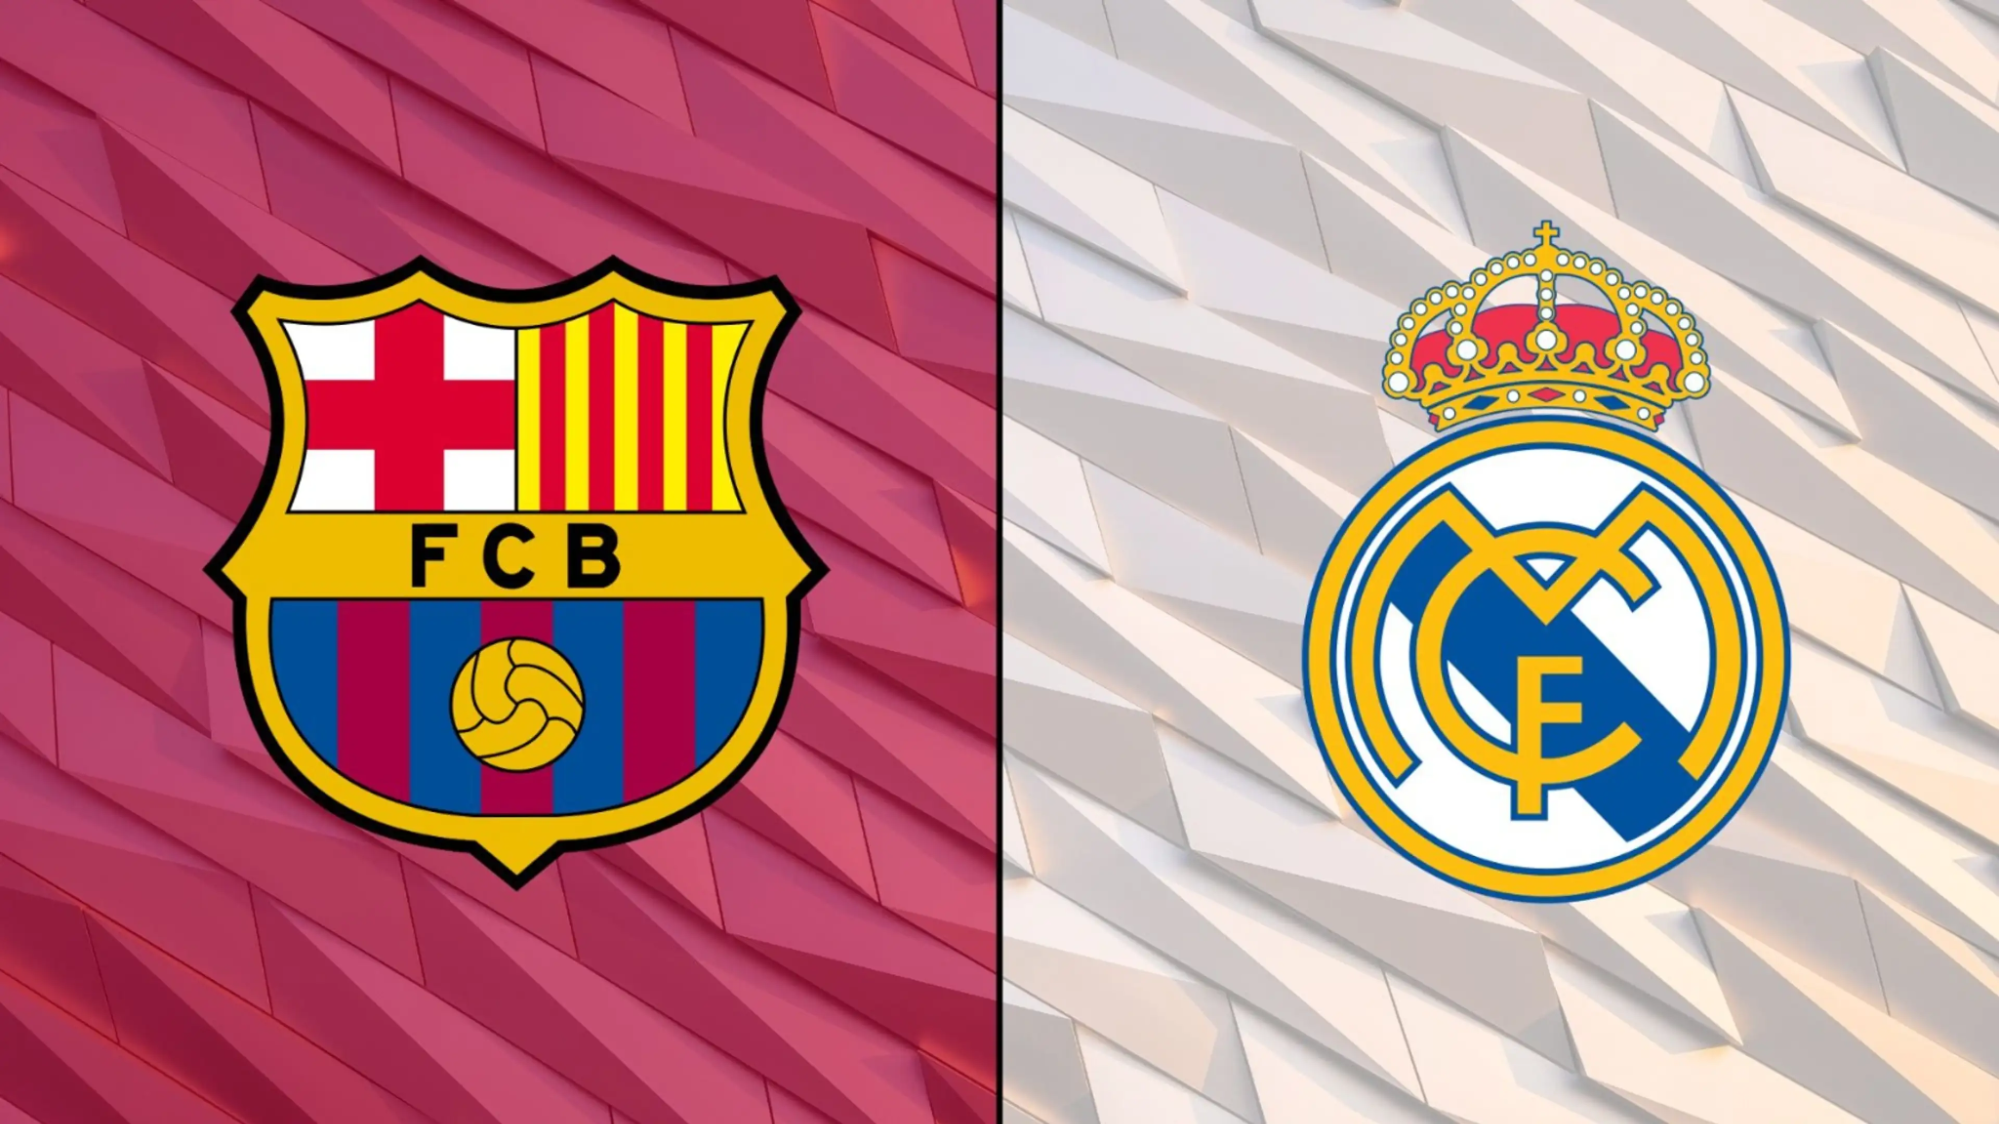 “El Clasico” là trận đấu giữa 2 câu lạc bộ Barcelona và Real Madrid